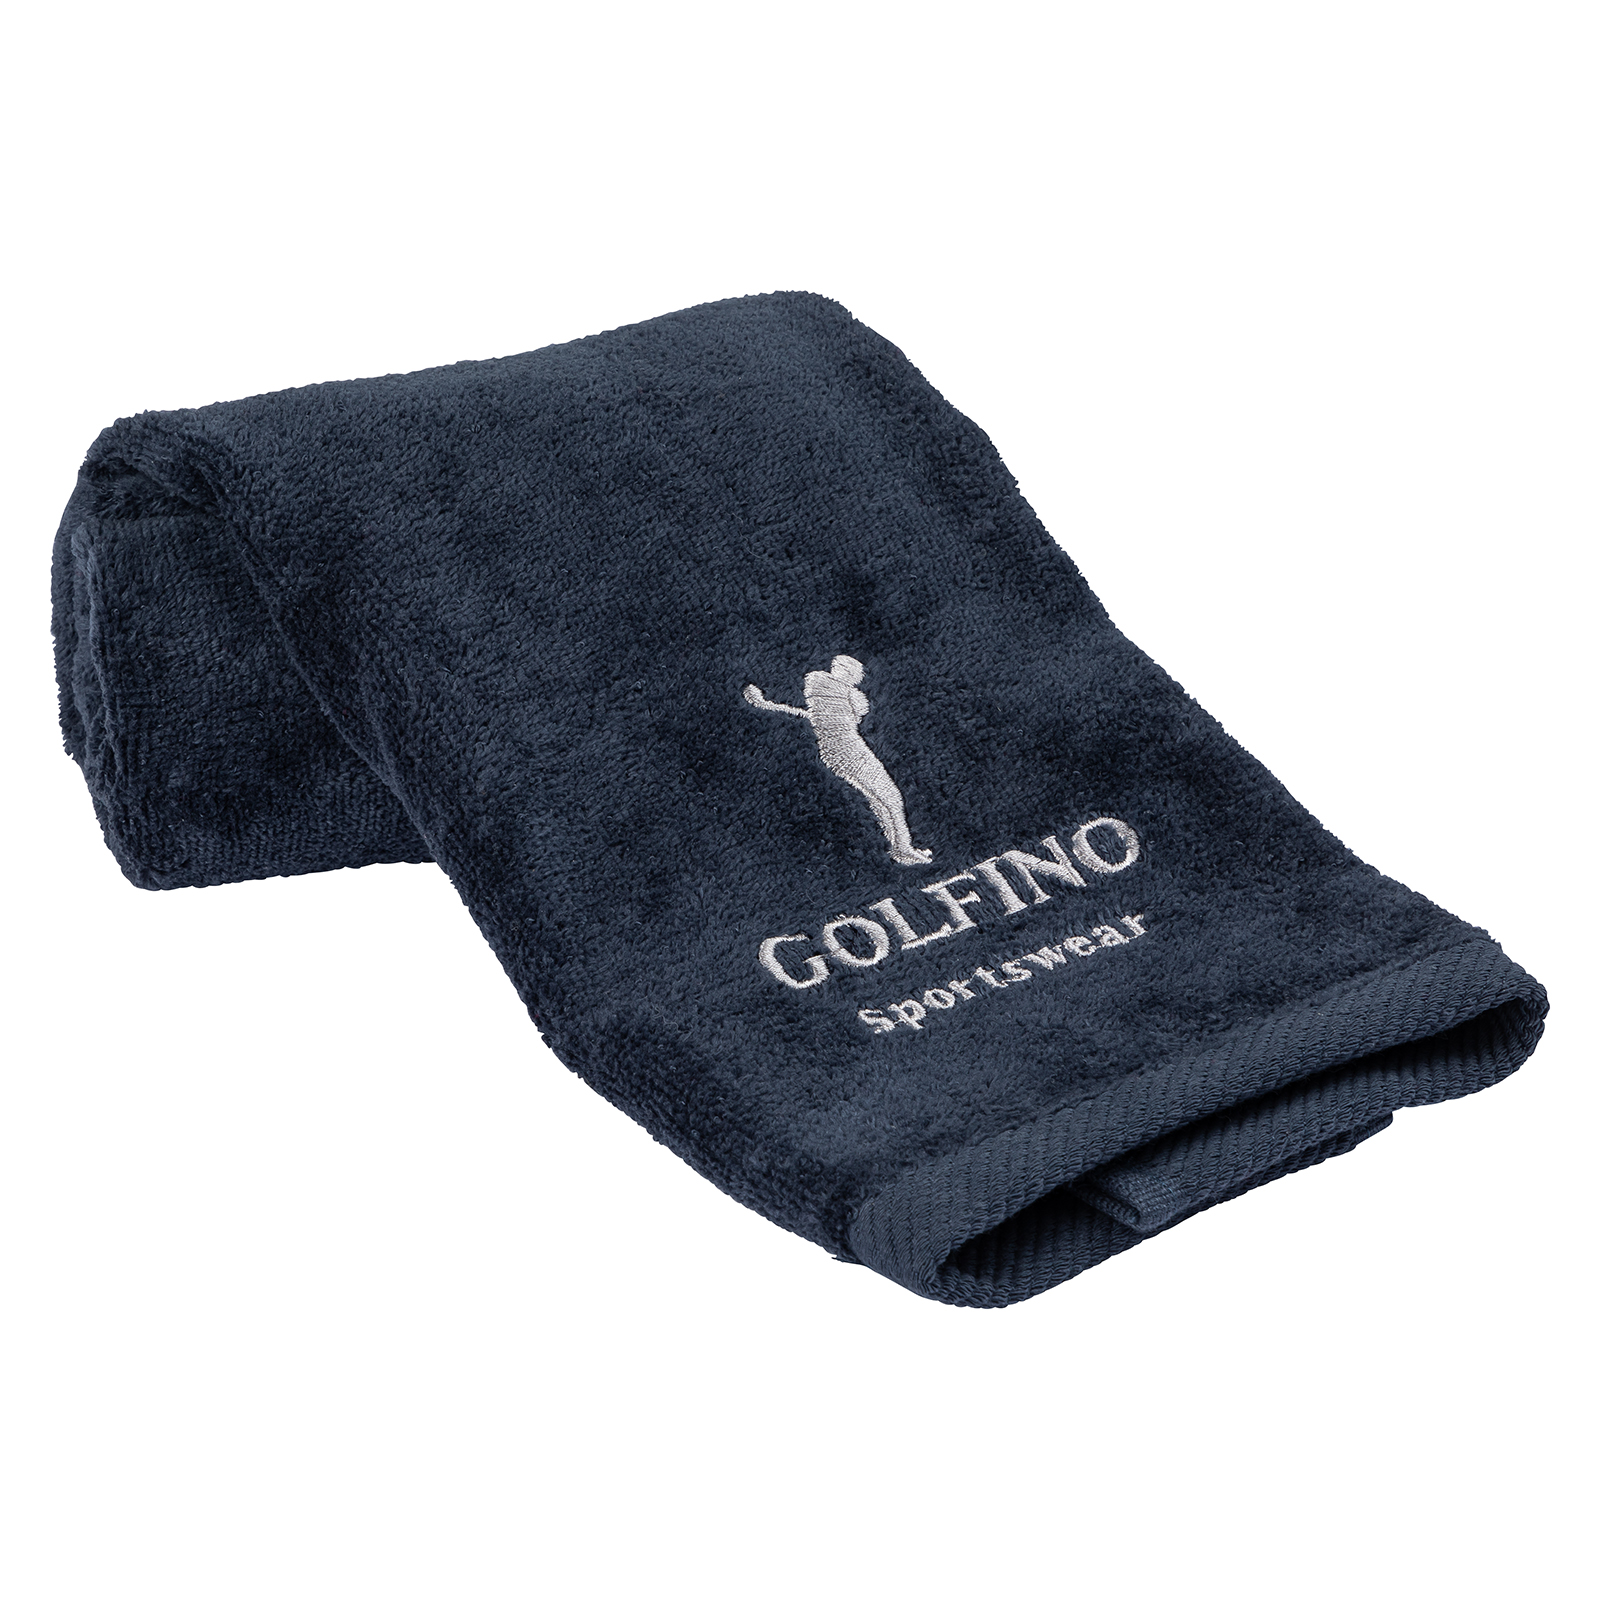 Saugfähiges Golf Handtuch für Schläger und Equipment